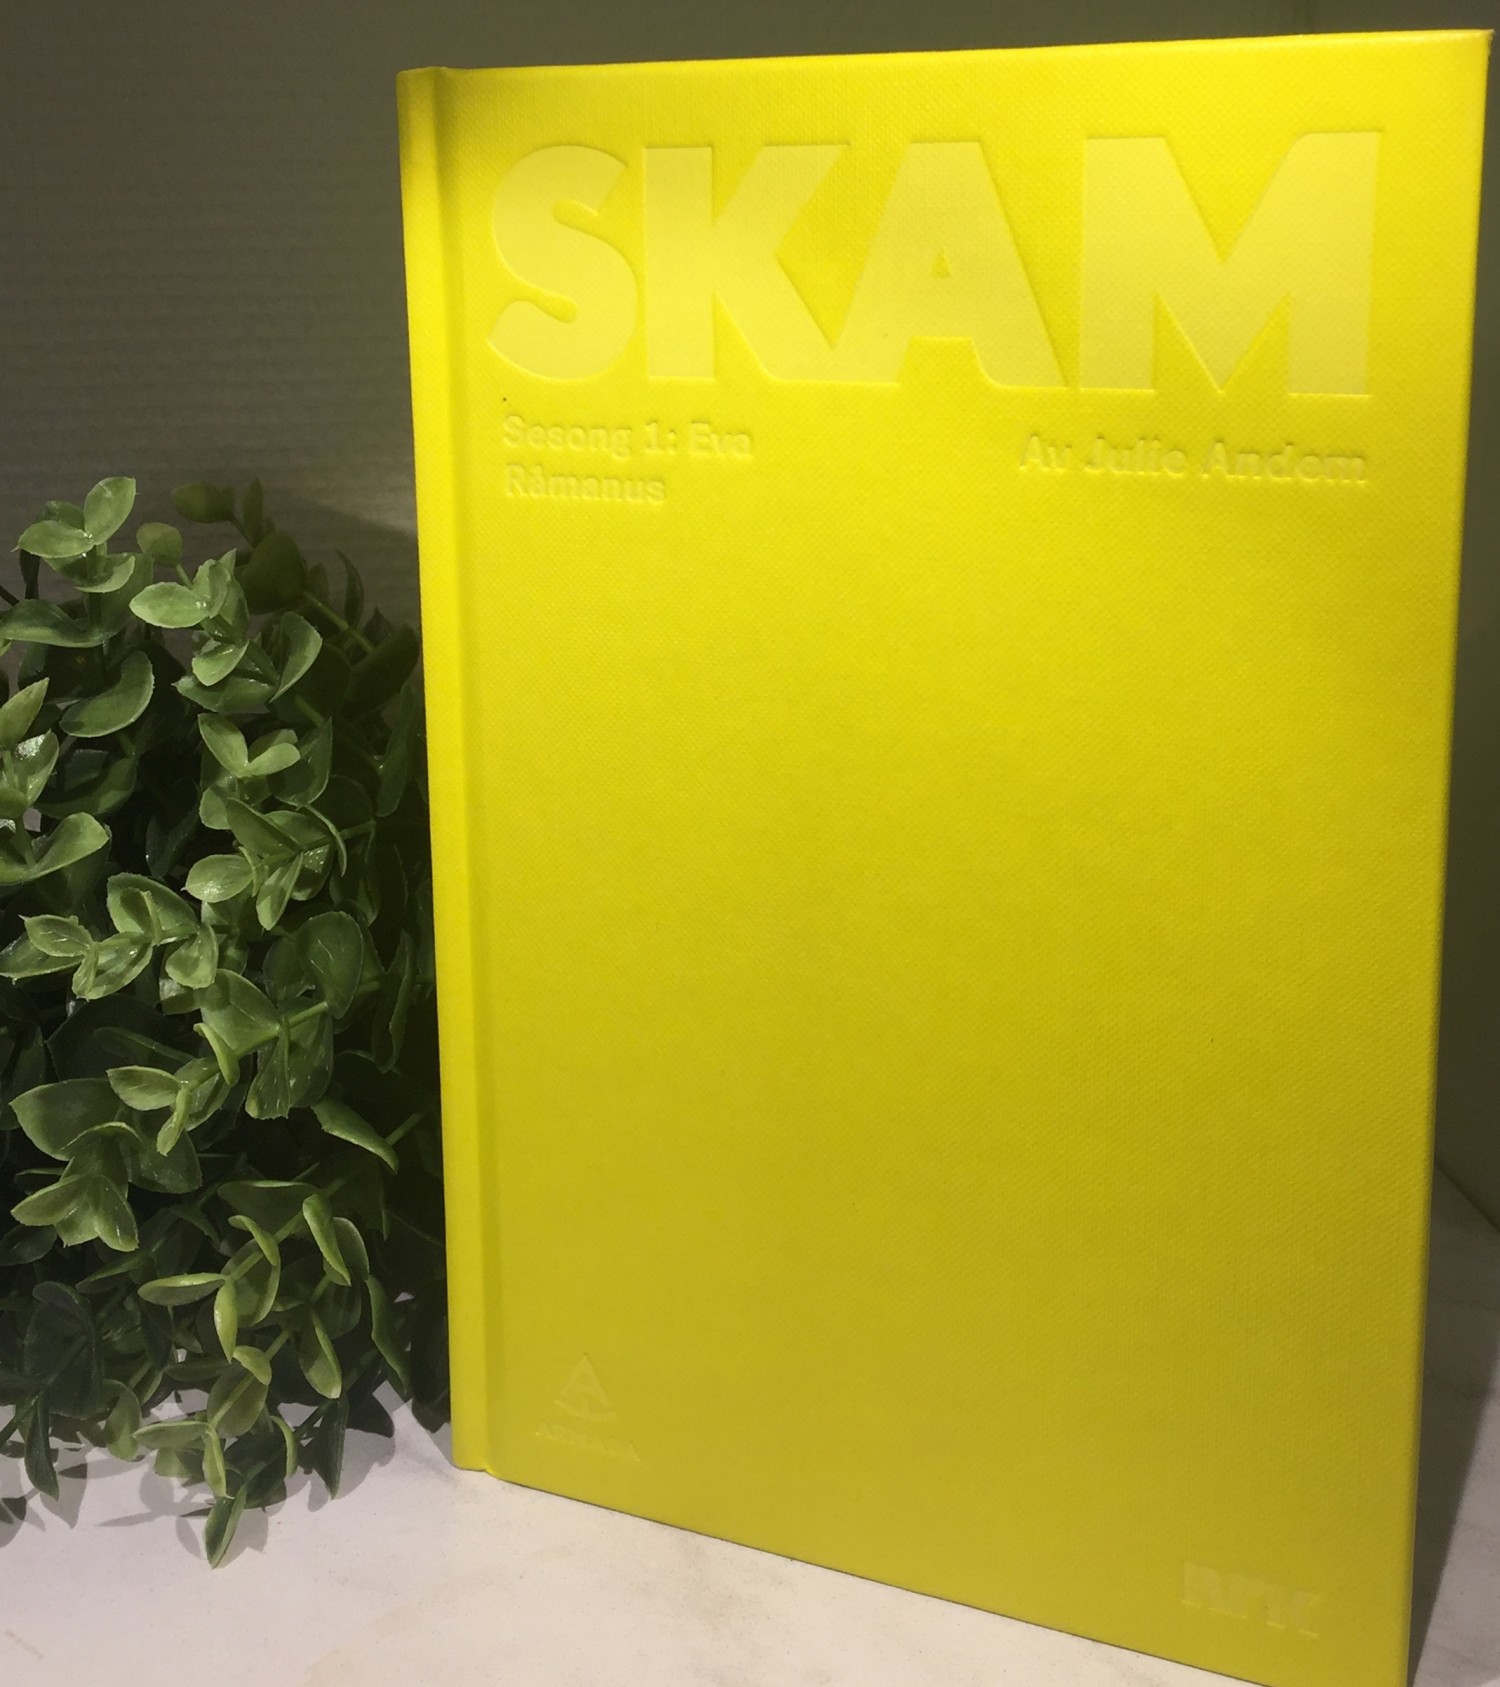 Norge, Norway, SKAM, Skam bøker, SKAM uredigeret manus, Skeivt arkiv, SKAM, Julie Andem, 